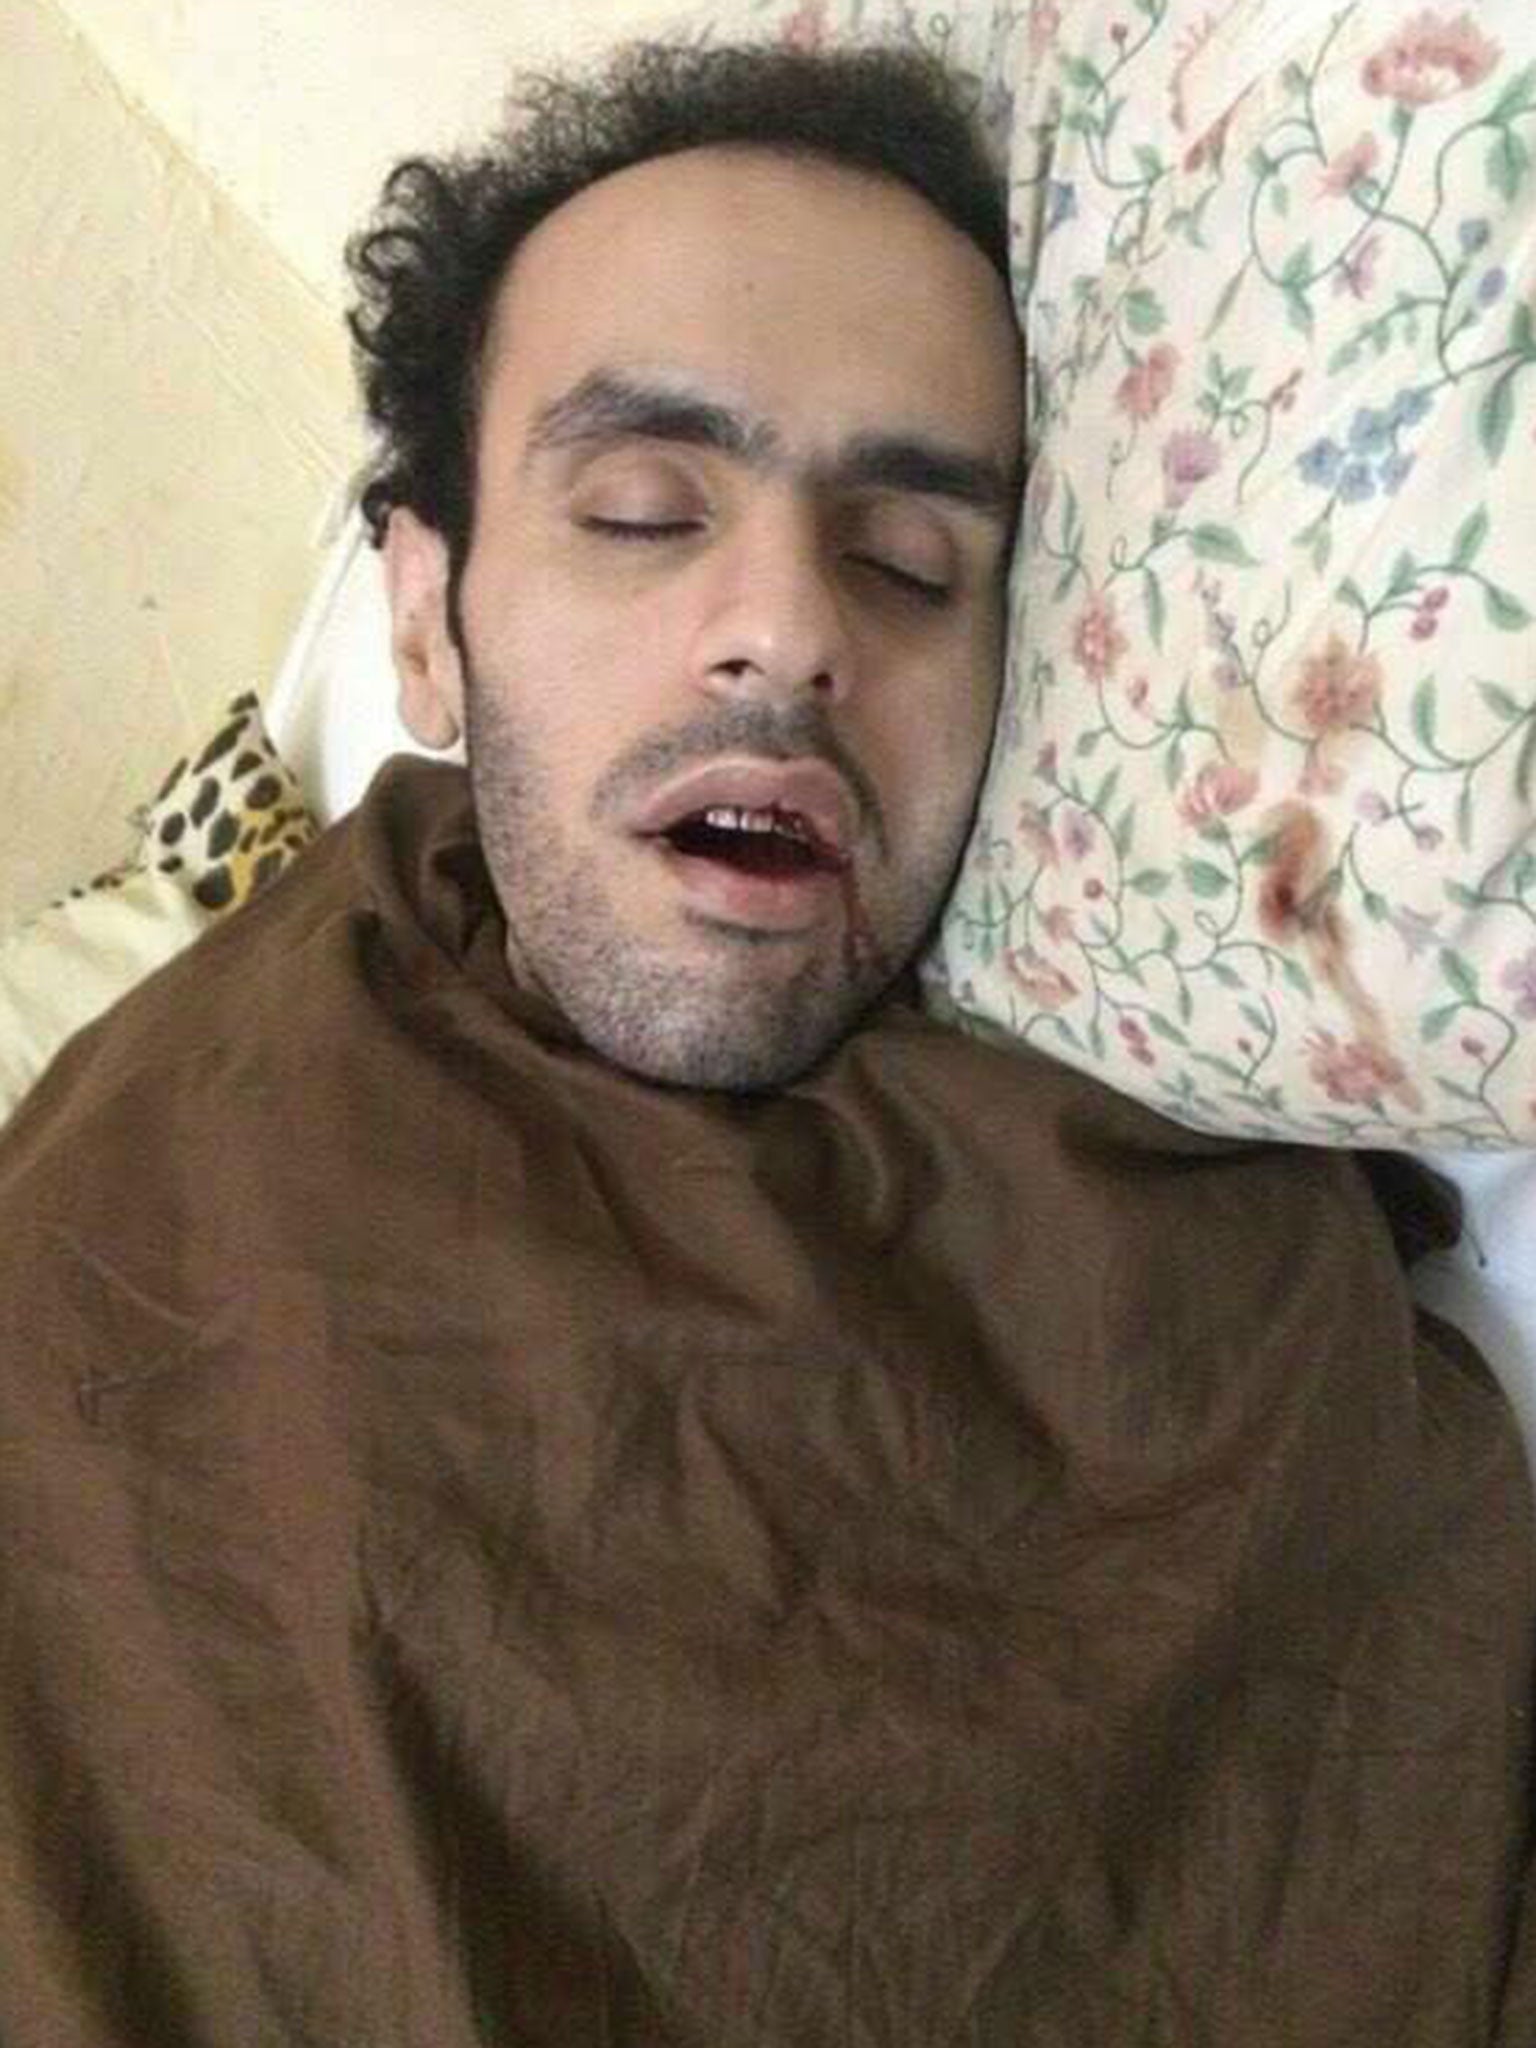 Mohamed Soltan shown bleeding in an Egyptian prison